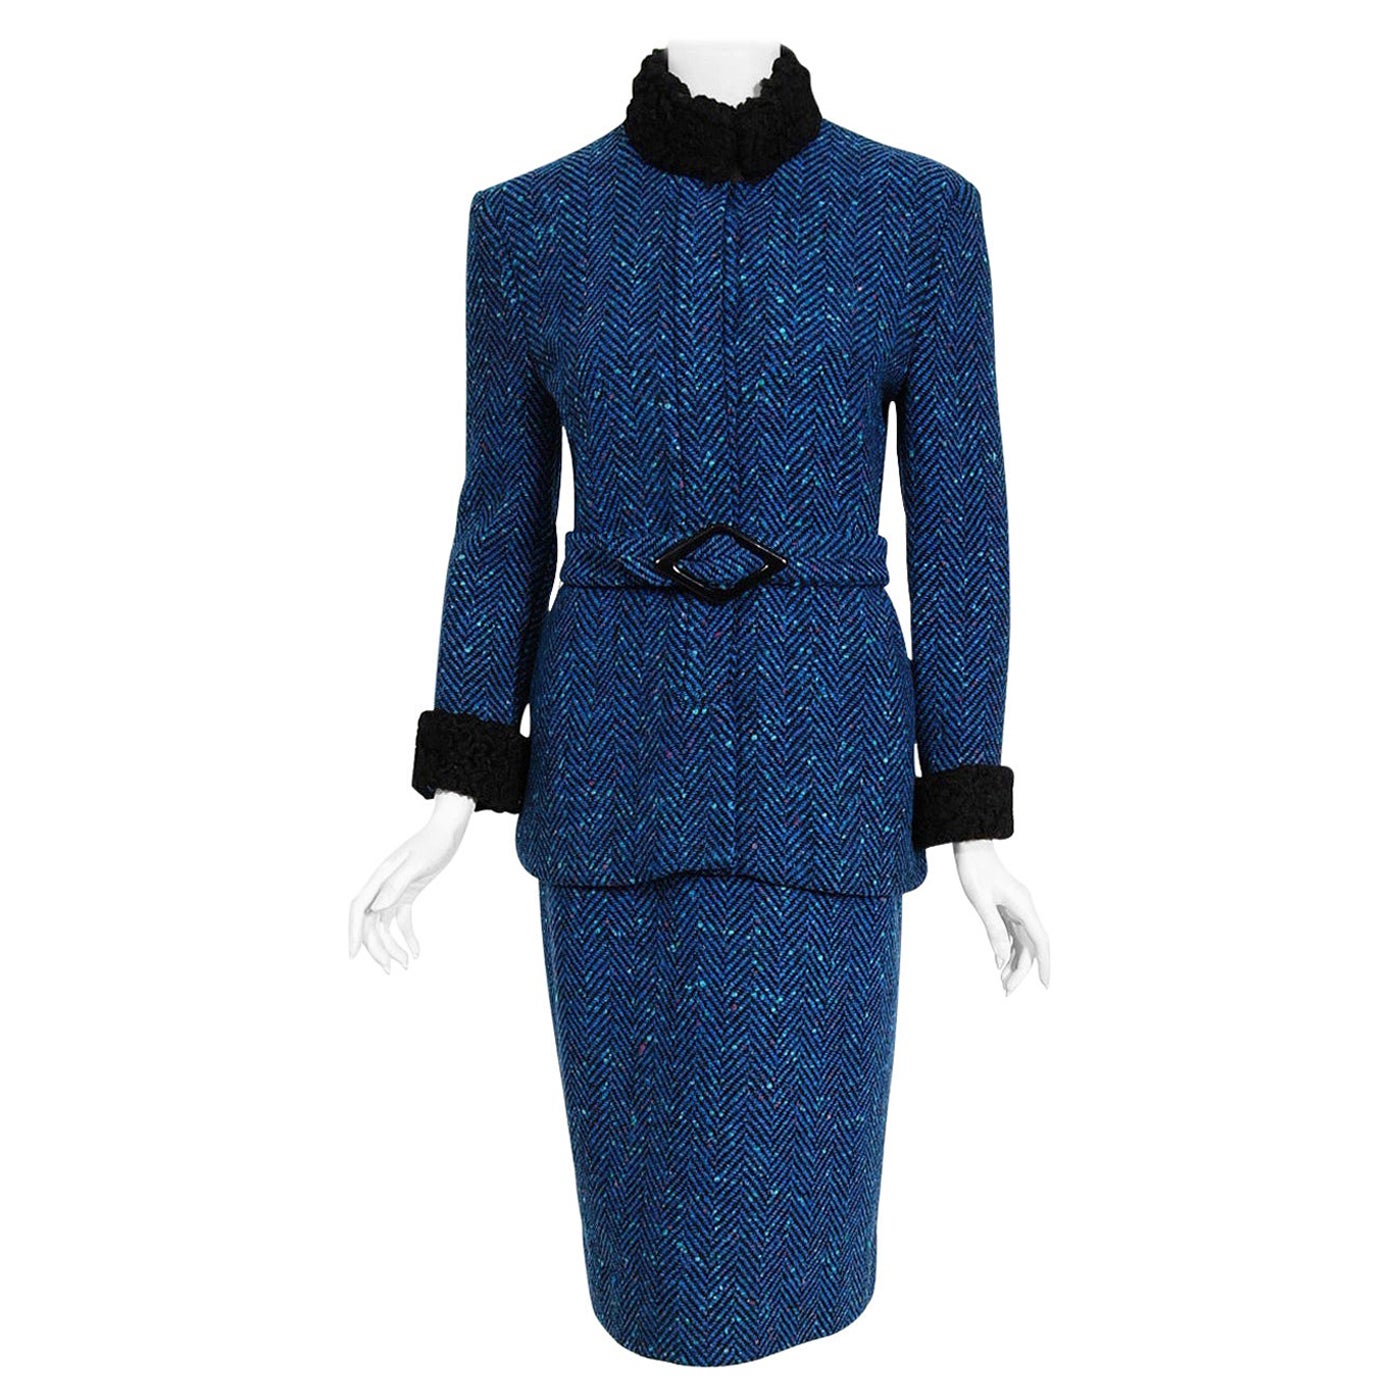 Vintage 1970s Biba of London Blue Chevron Wool & Faux-Fur Belted Jacket w/ Skirt For Sale